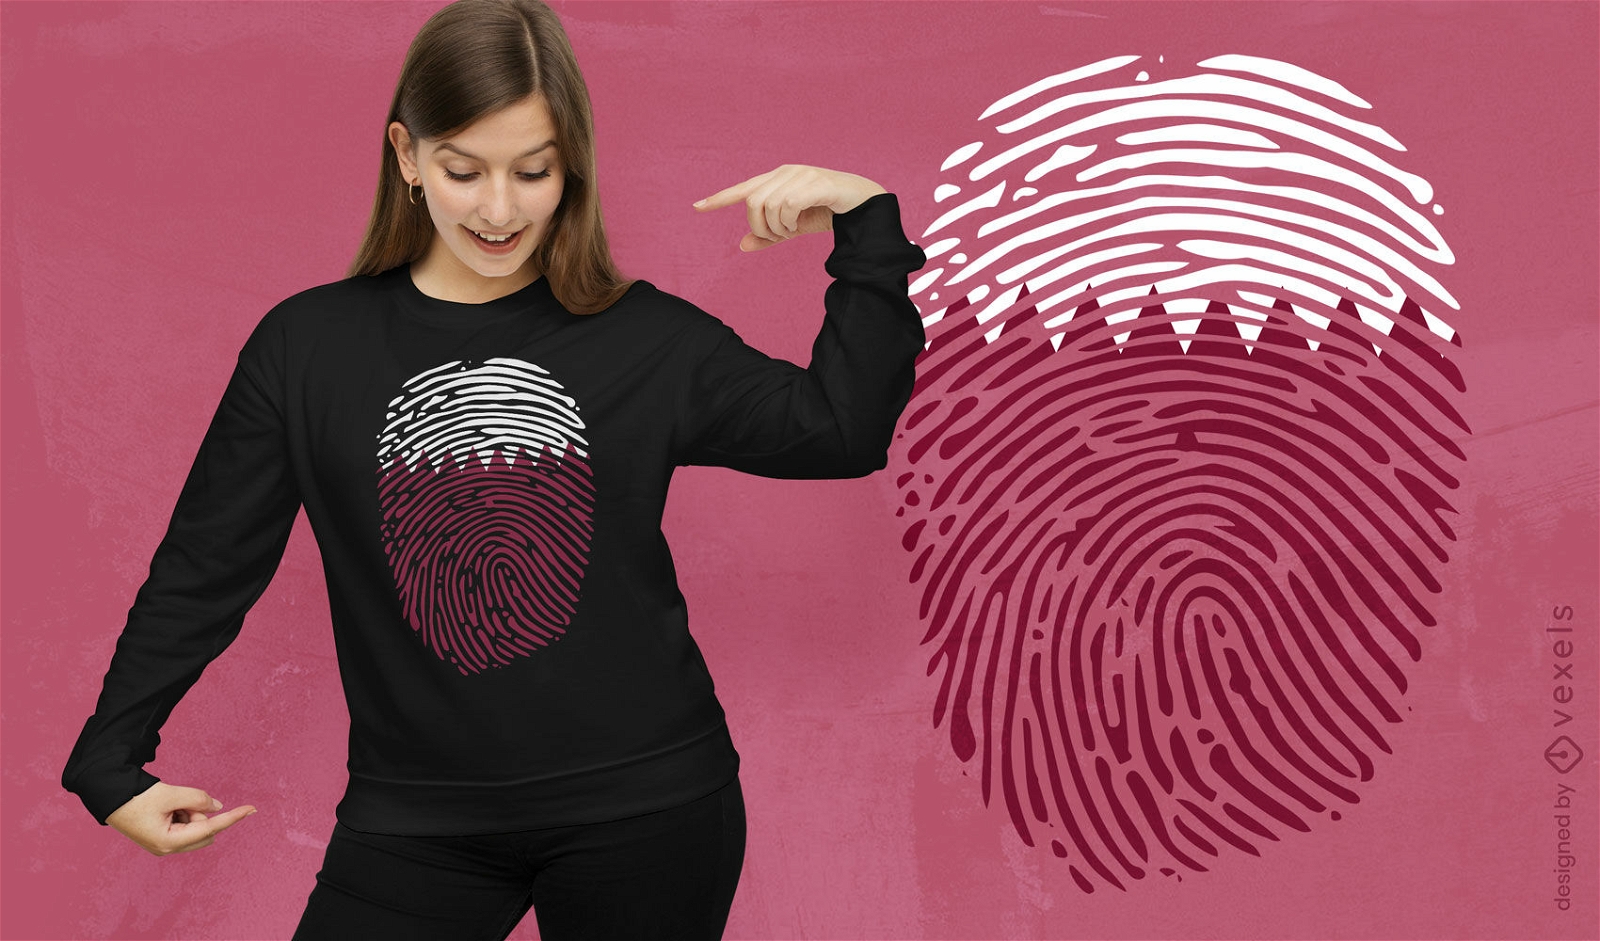 Katar-Flaggen-T-Shirt-Design mit Fingerabdrücken